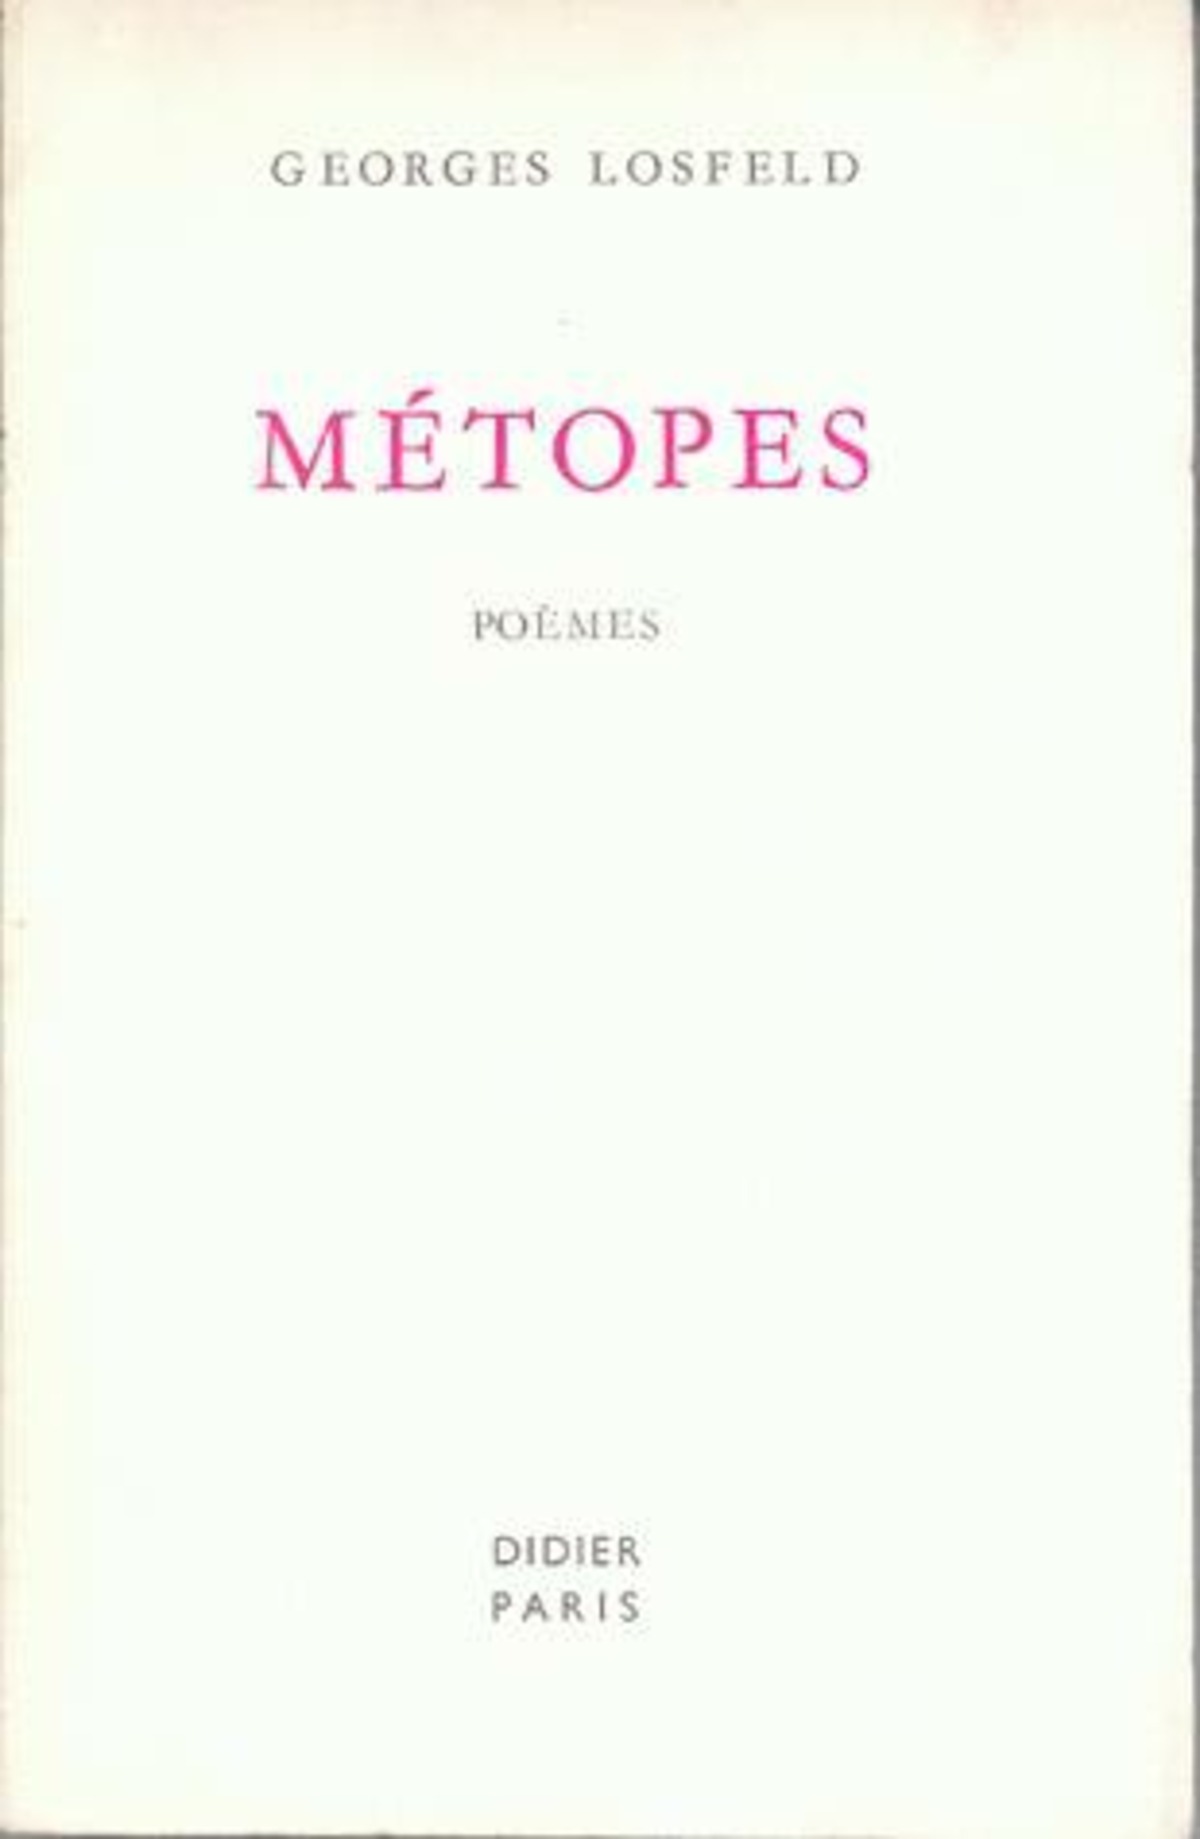 Métopes (poèmes)